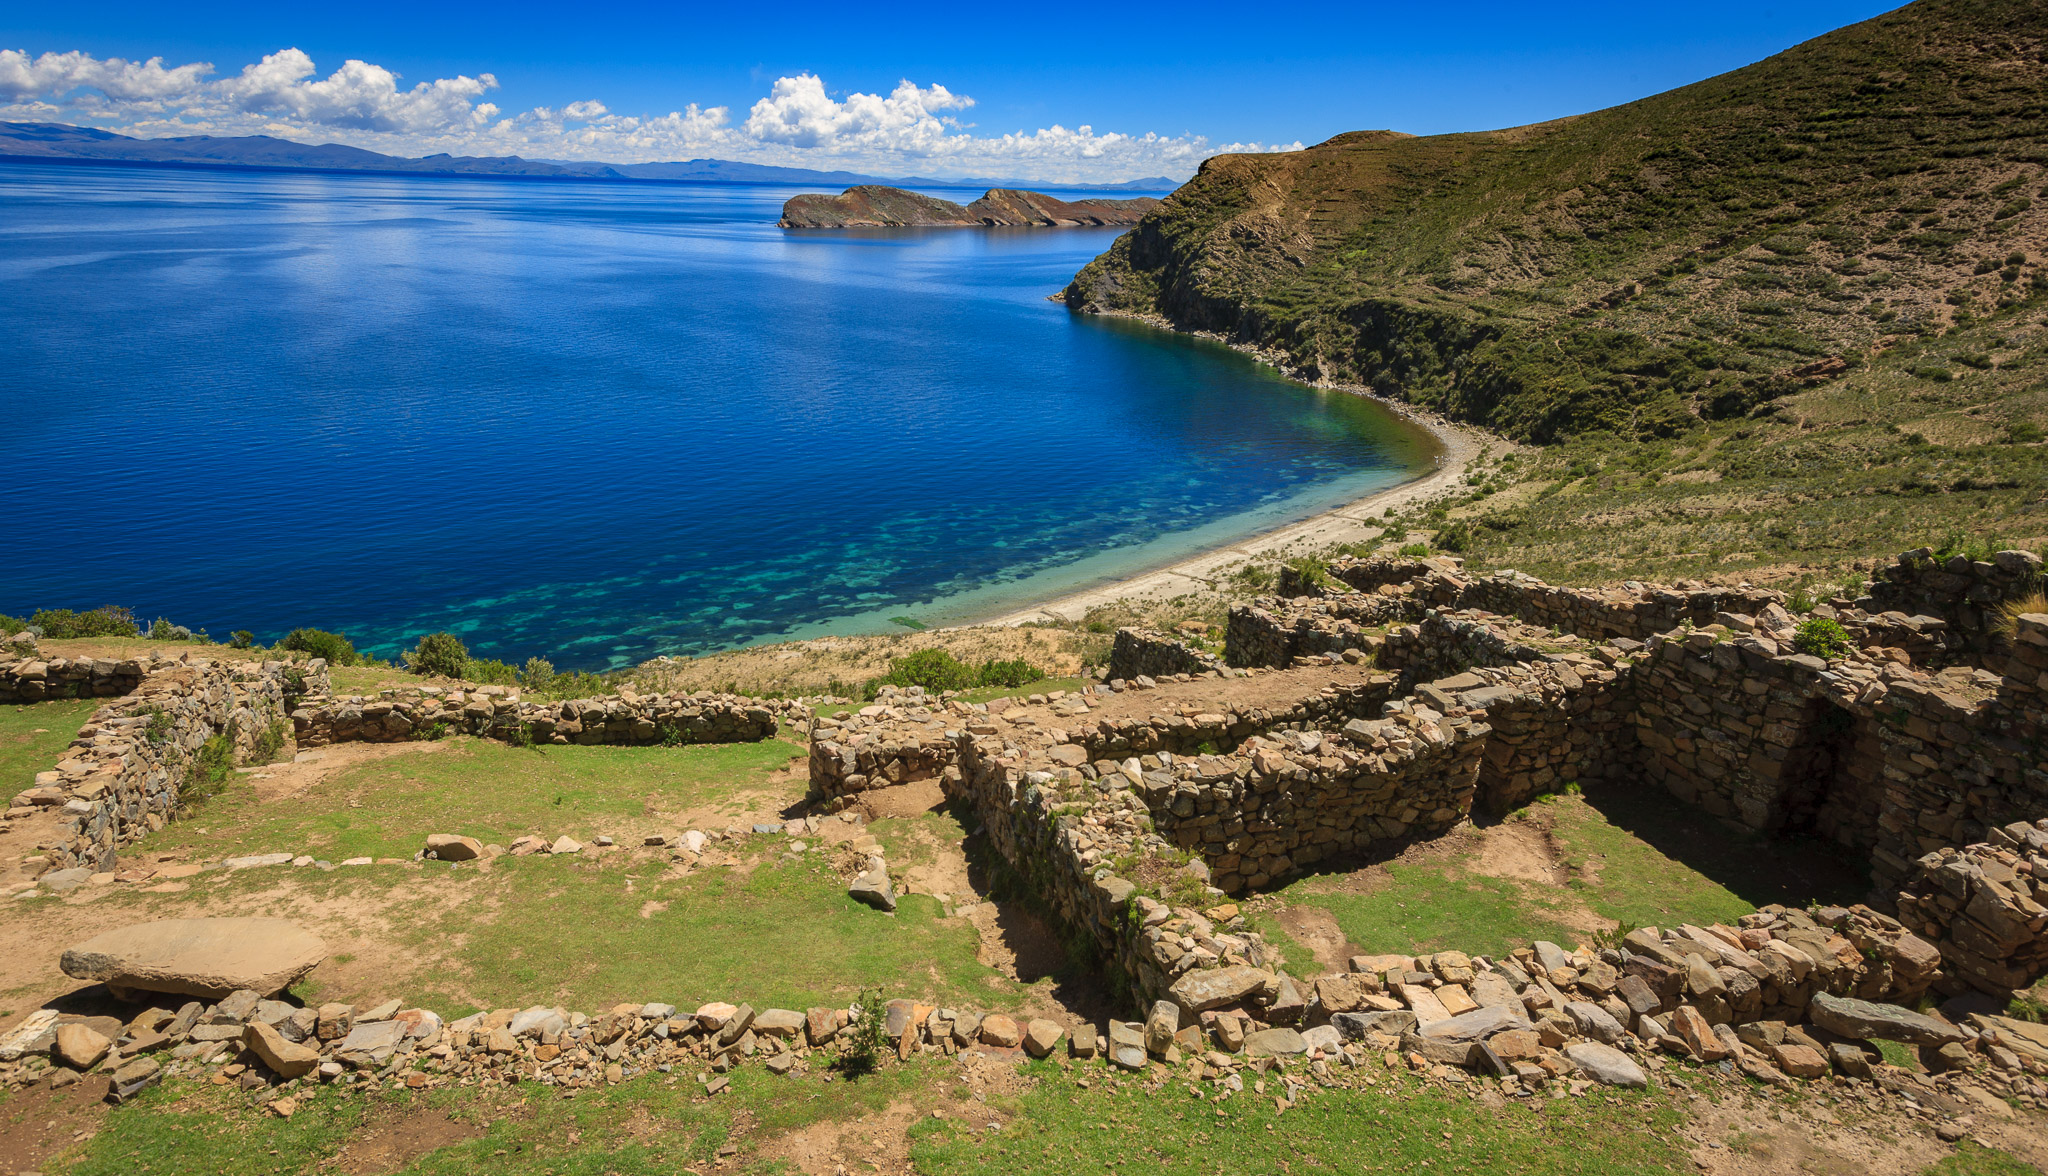 Chincana's ruins where Inca priests lived, Isla del Sol